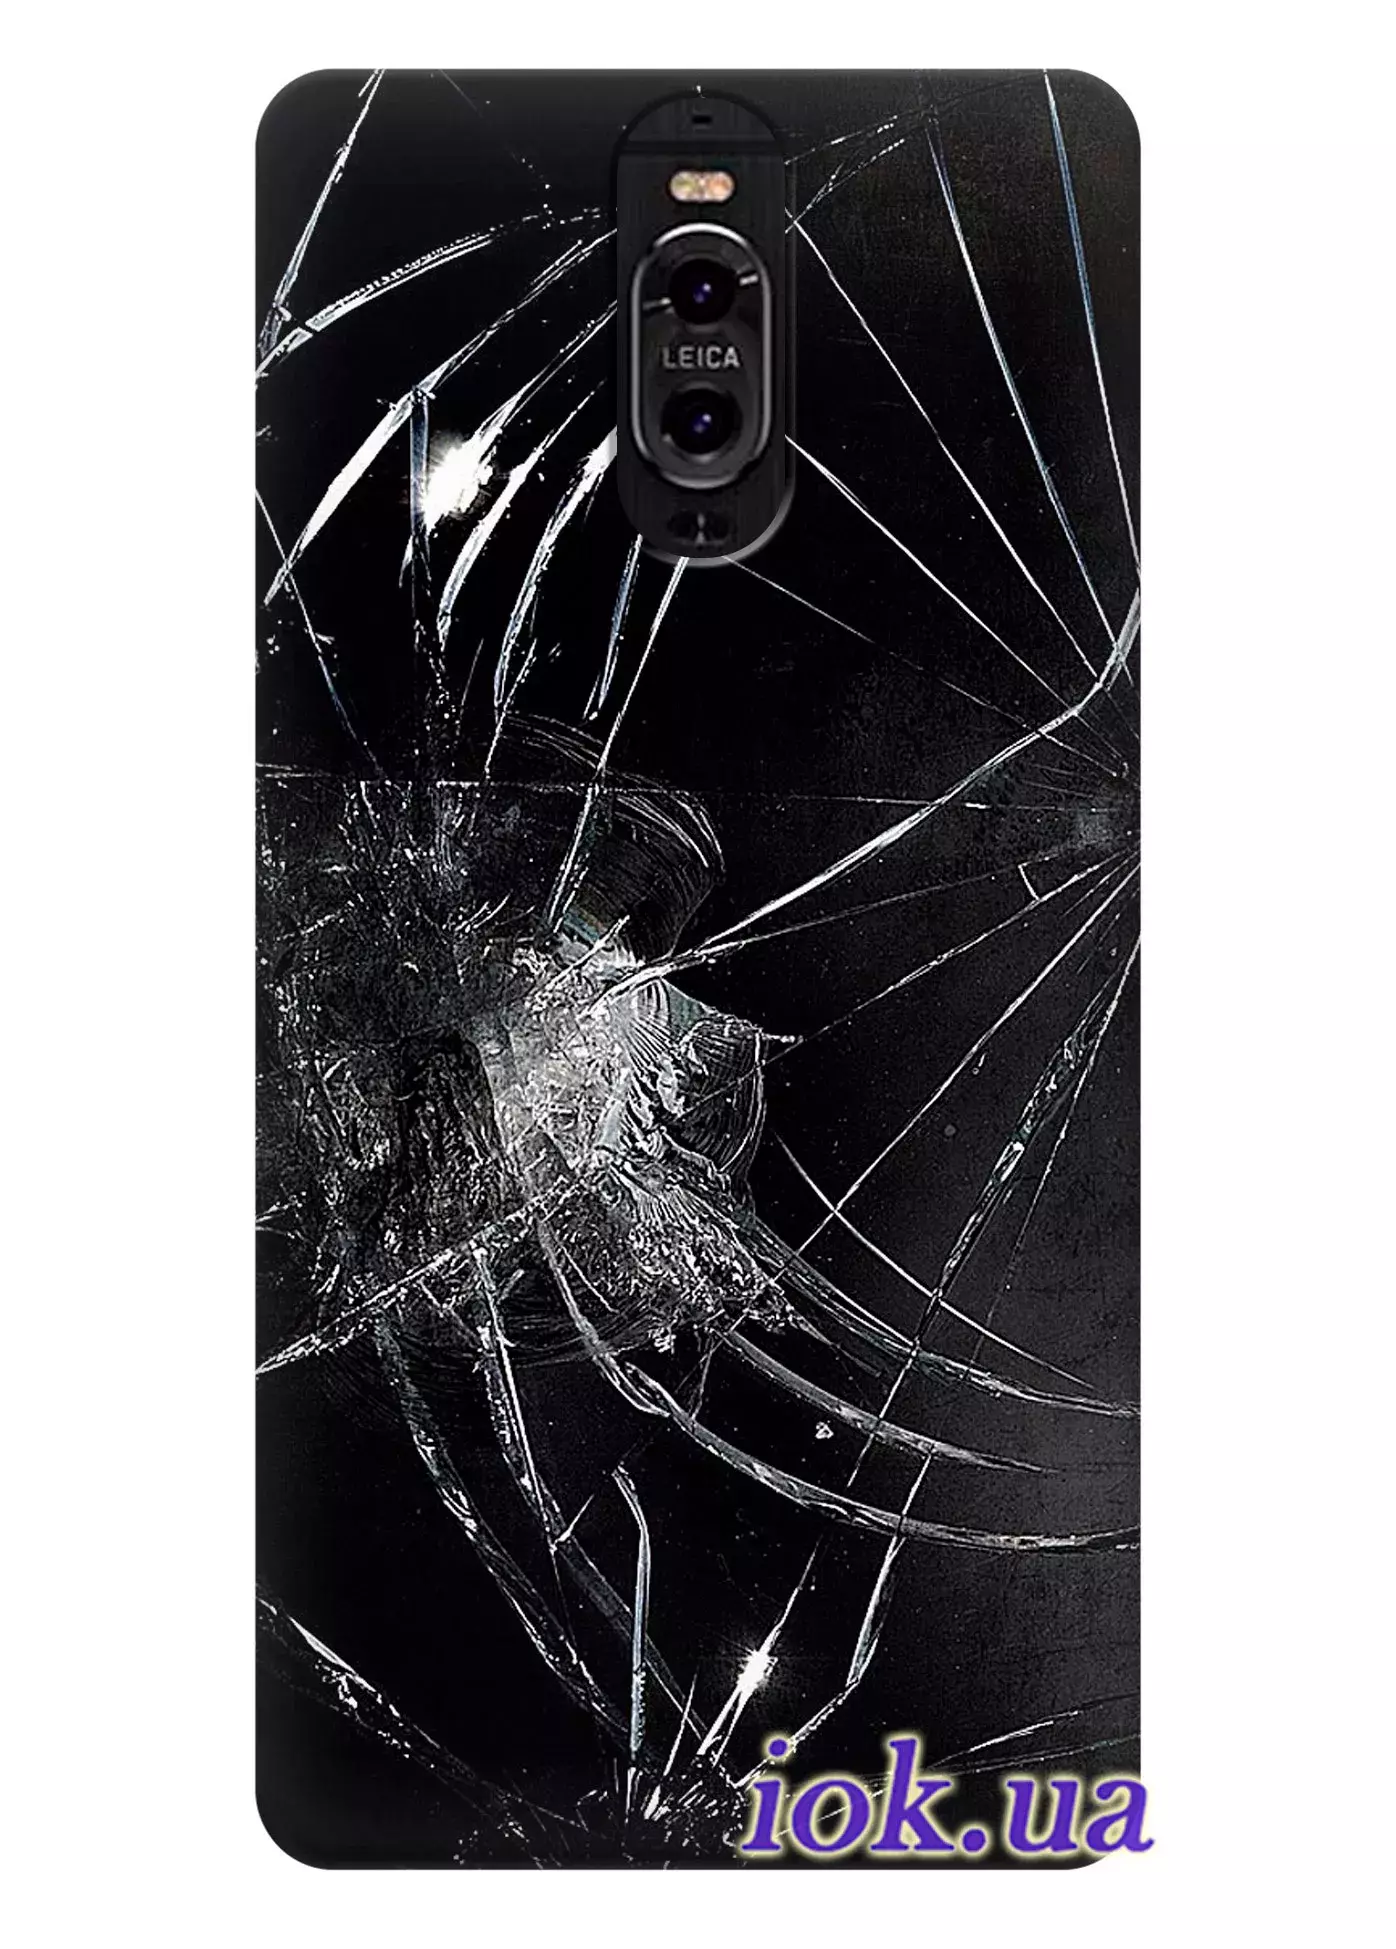 Чехол для Huawei Mate 9 Porsche - Разбитое стекло 